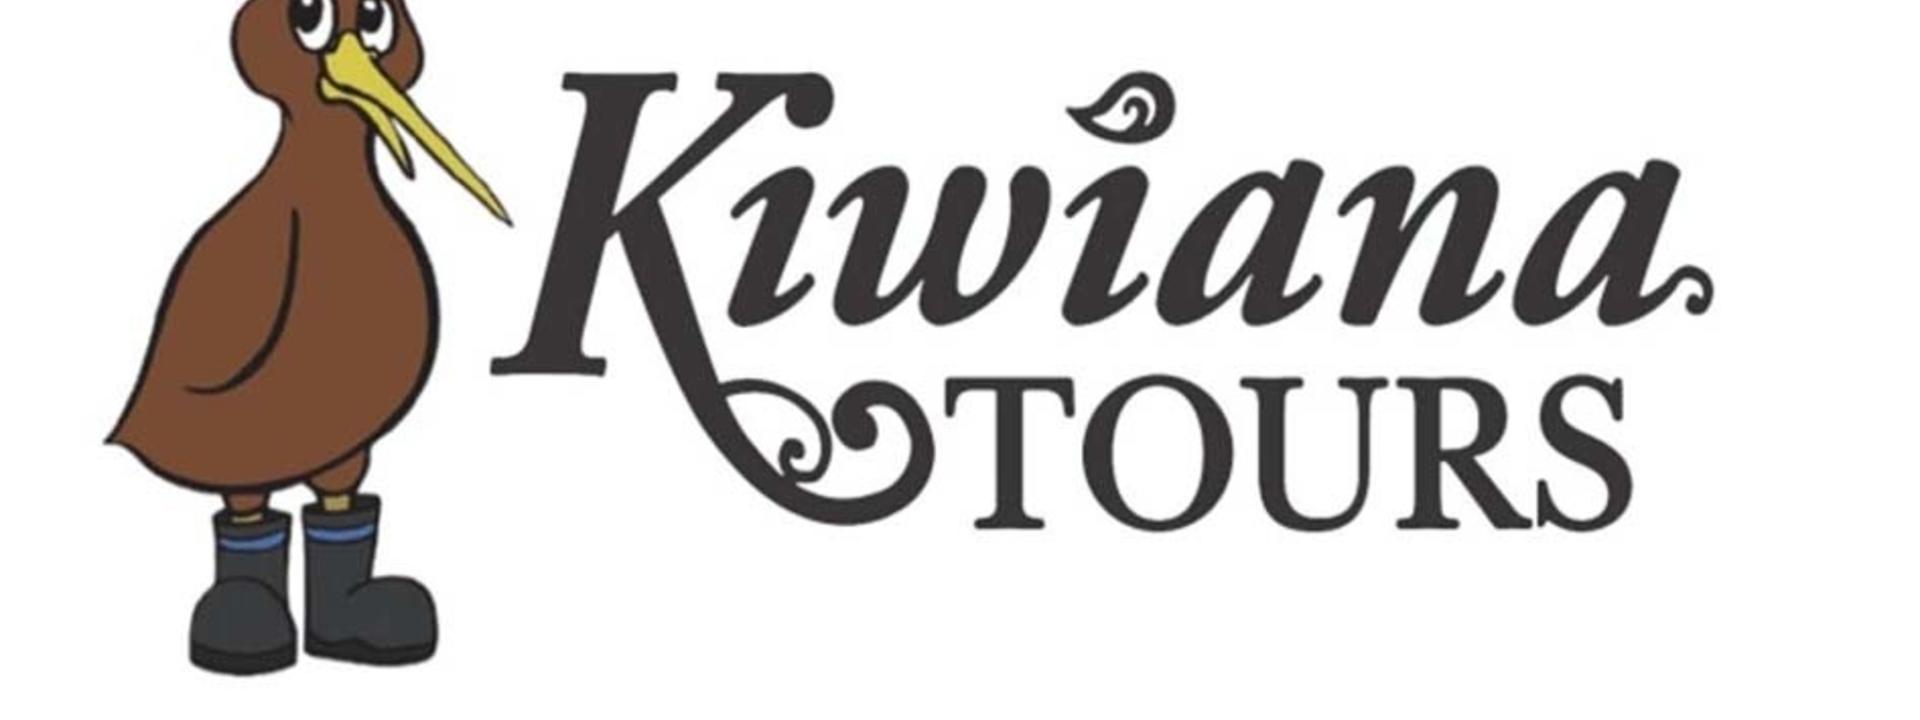 Logo: Kiwiana Tours 2009 Limited